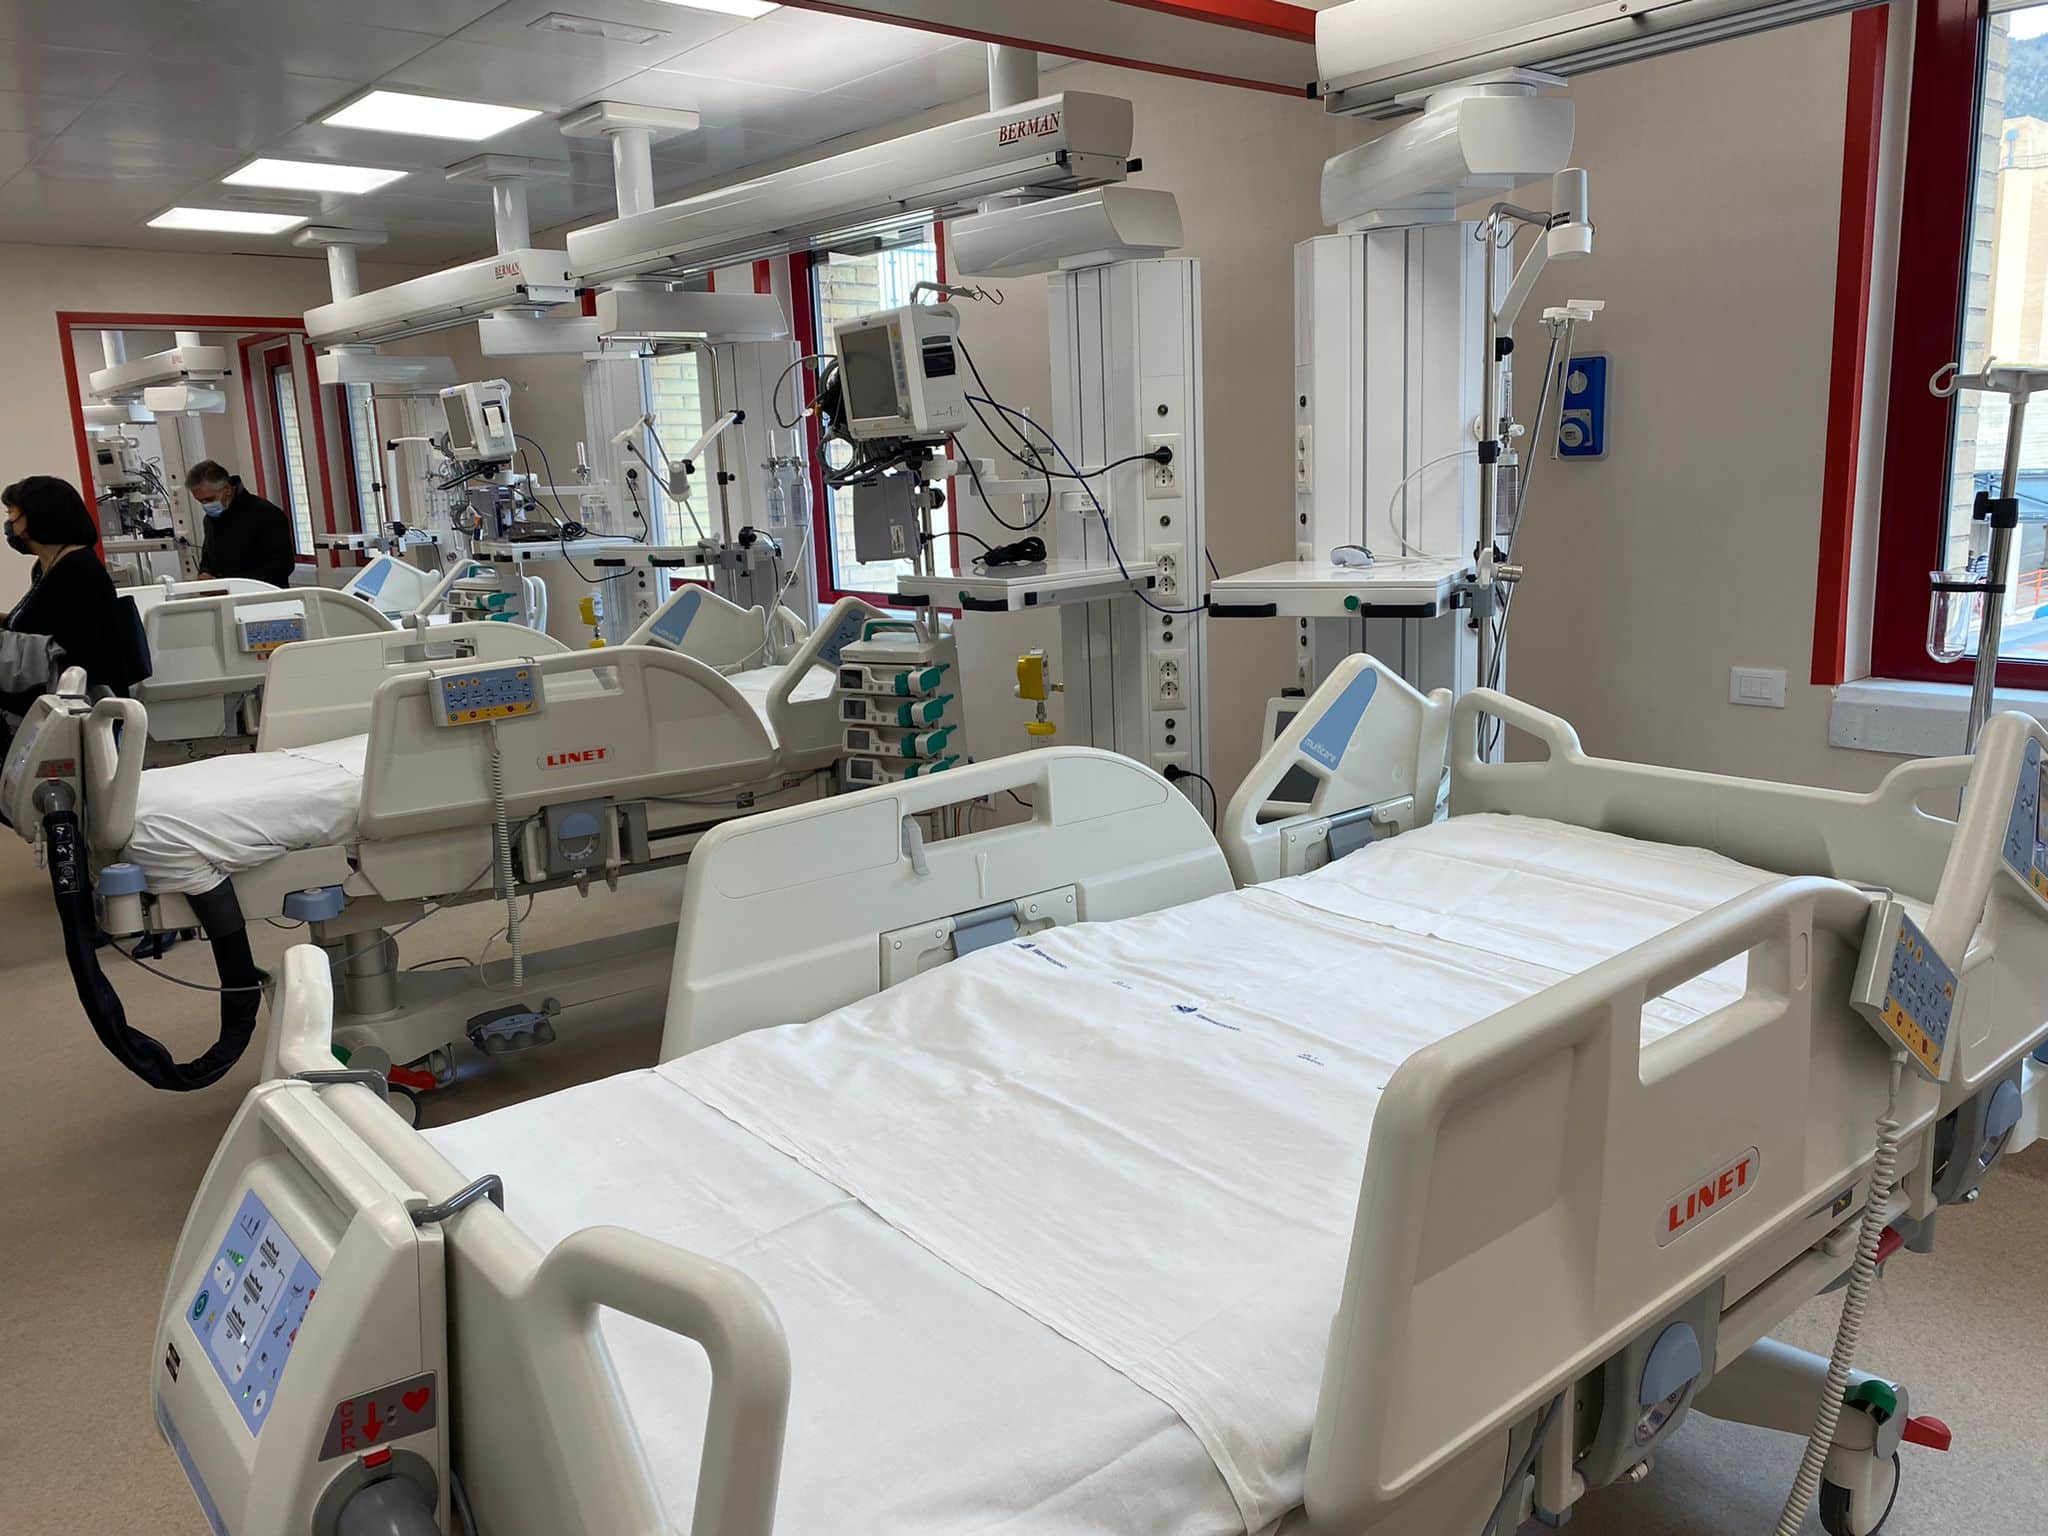 Pienamente operativo il Modulo di Terapia Intensiva Grandi emergenze dell'Ospedale dell'Aquila